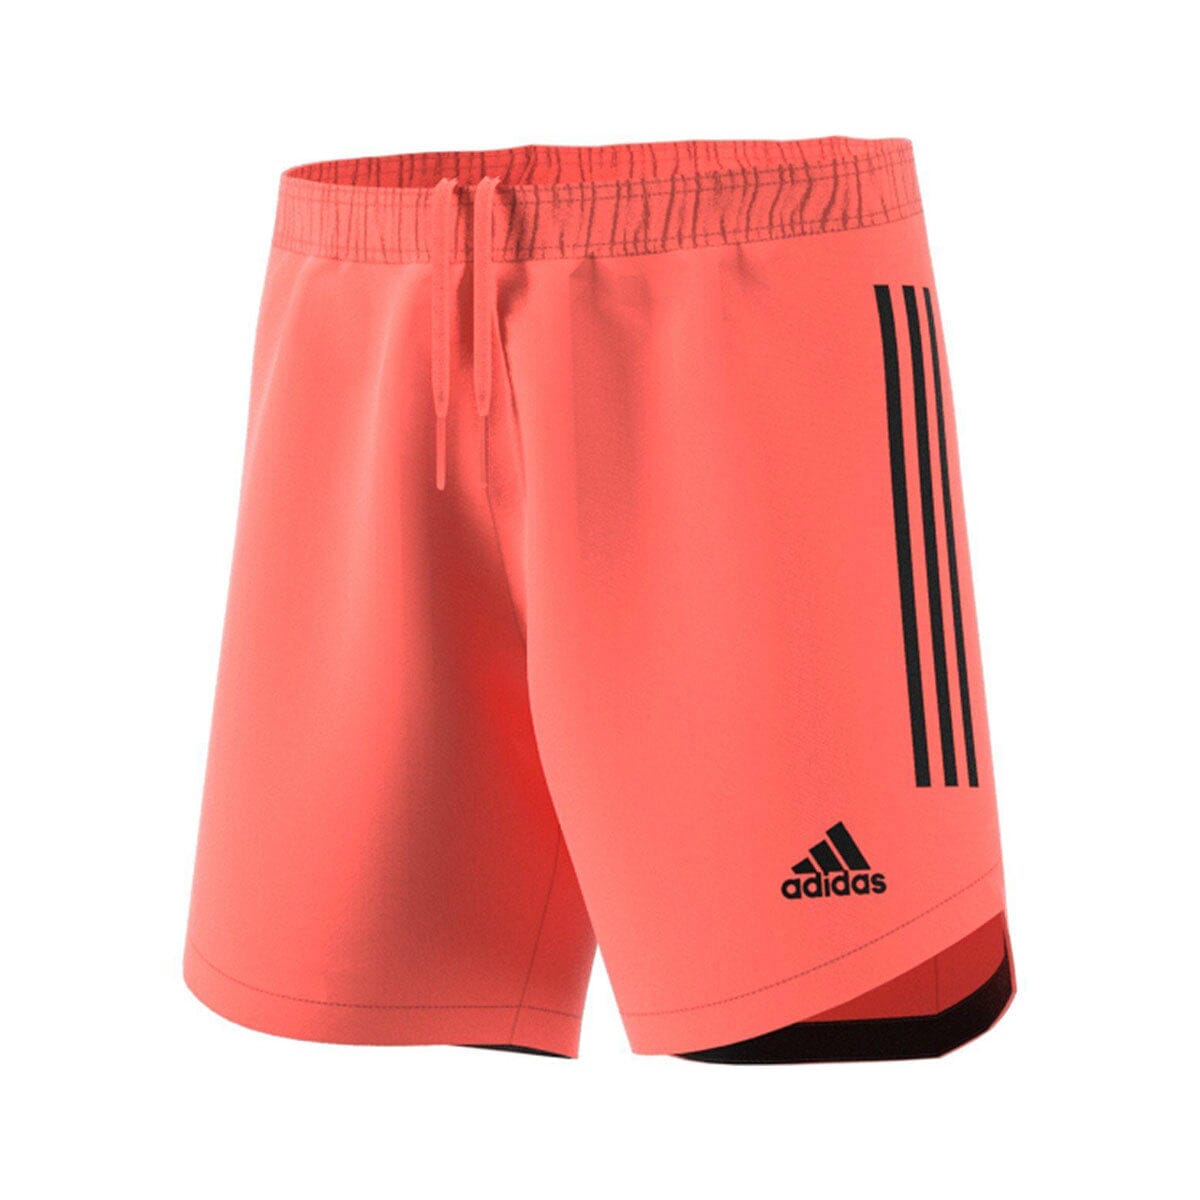 adidas Men&#39;s Condivo 20 Short Shorts Adidas Adult Small signal coral/black 